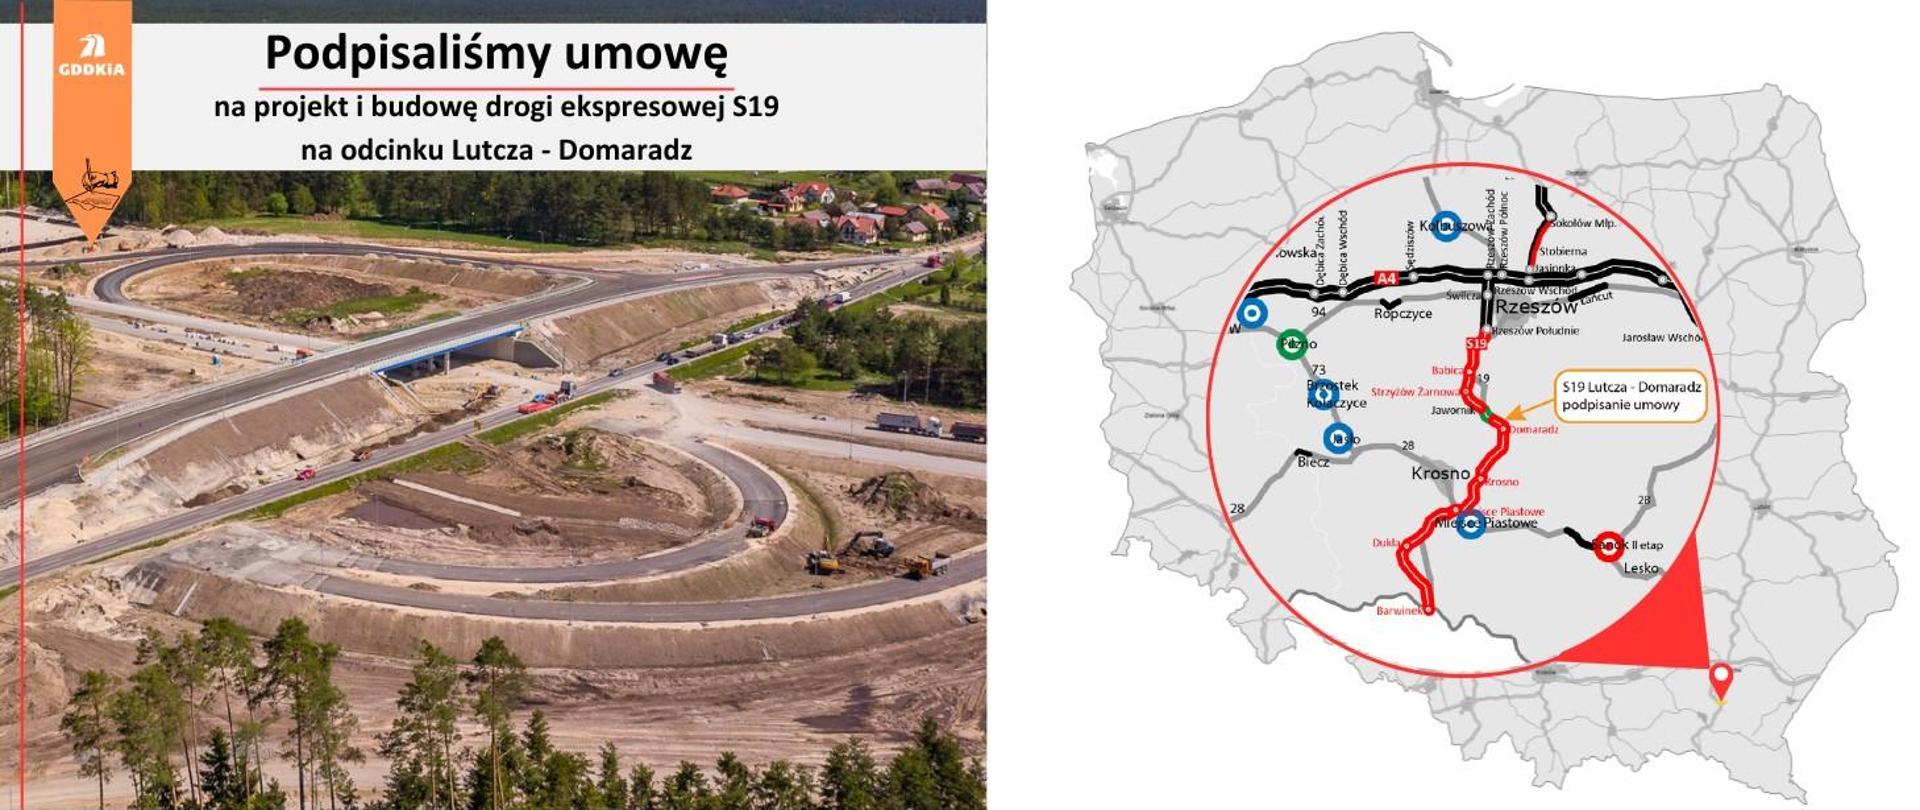 Grafika pokazująca zdjęcie z budowy a o prawej stronie mapę województwa podkarpackiego wraz z zaznaczonym odcinkiem S19 Lutcza - Domaradz i informacją, o podpisaniu umowy na budowę tego odcinka.